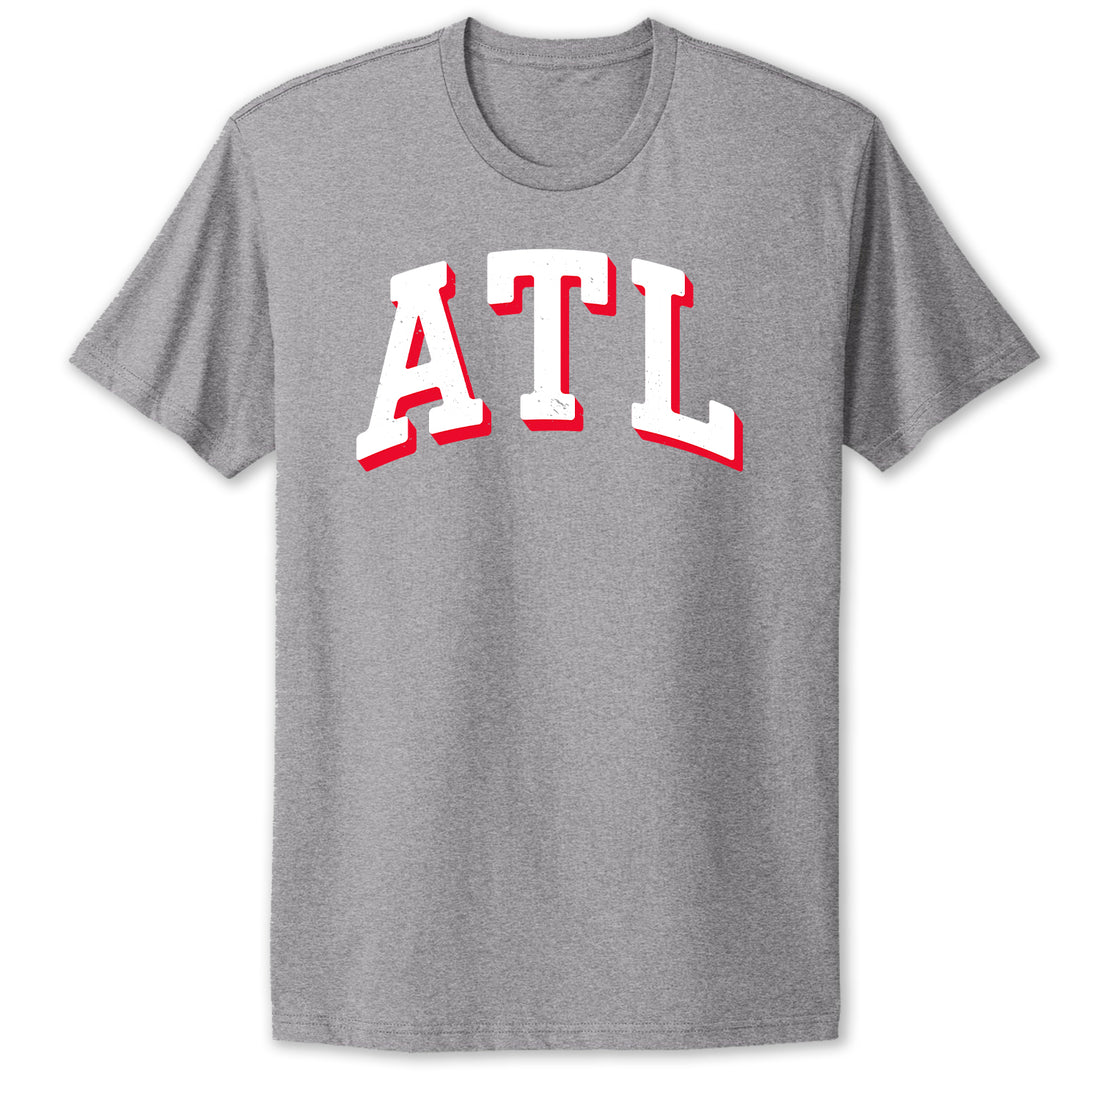 ATL Heather Grey T-Shirt